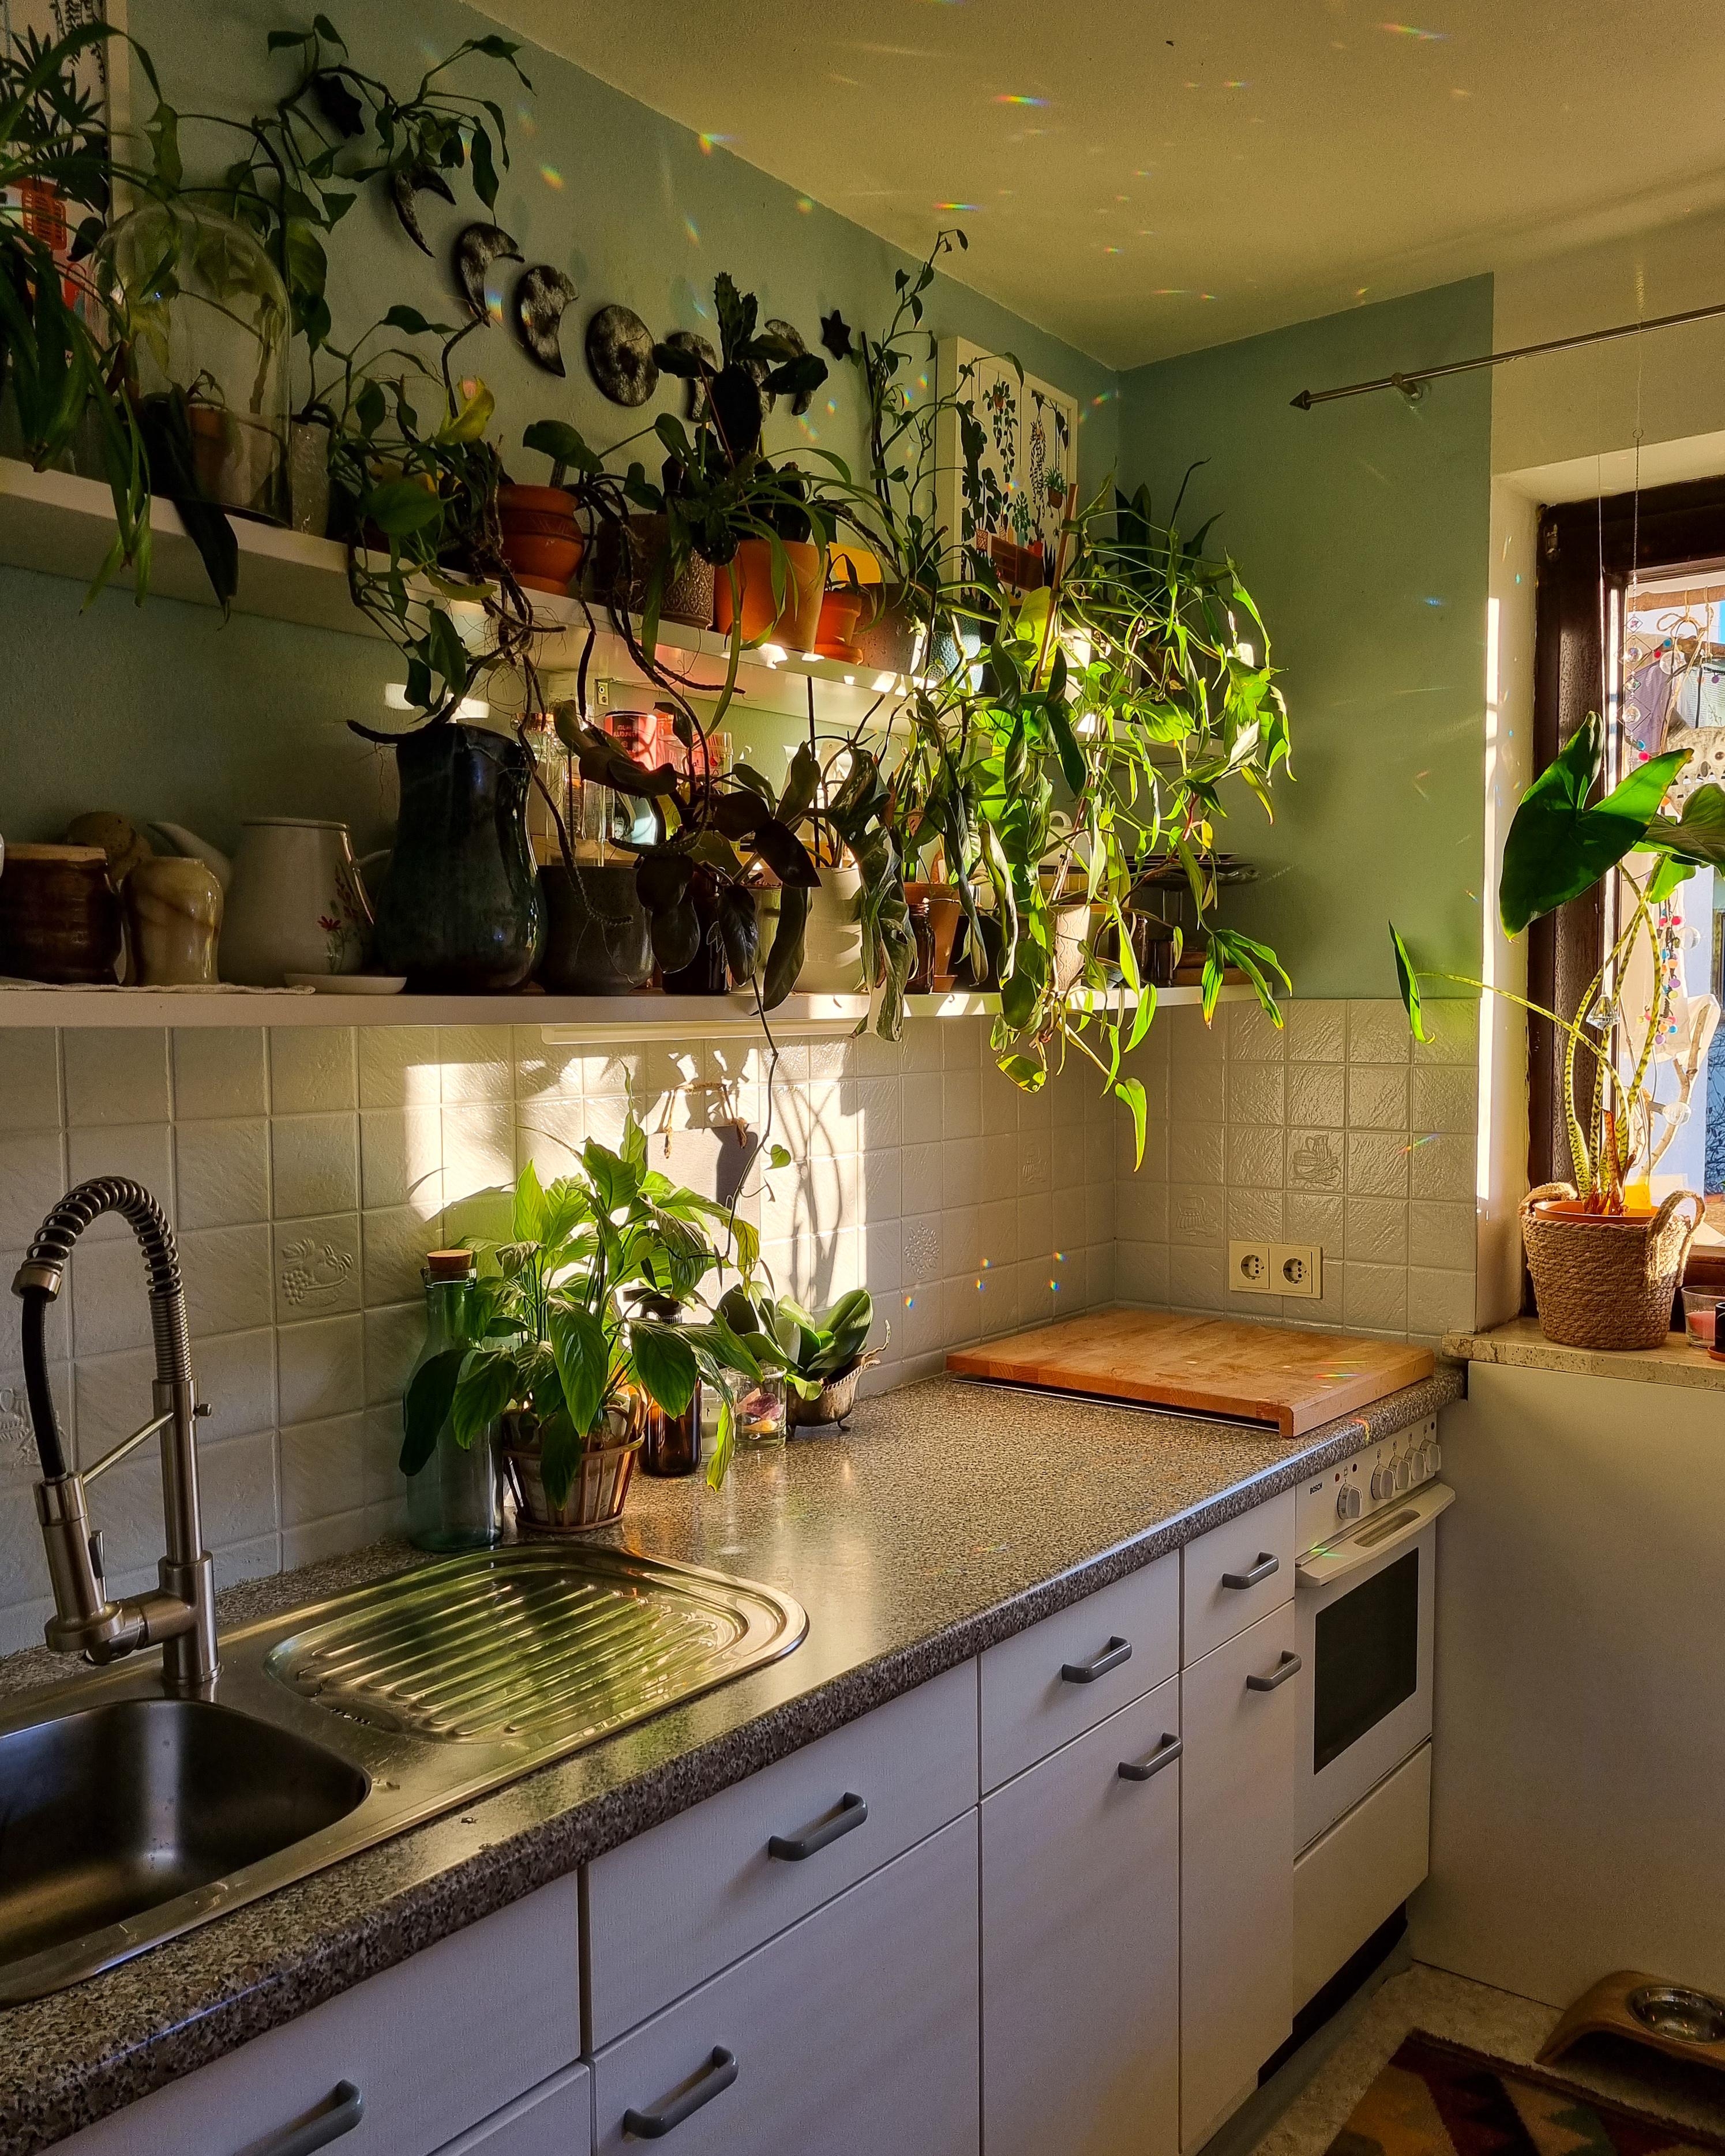 5 Minuten Sonne 🌞 #Küche #Regal #Pflanzen #keramik #Geschirr #Wohnung #deko #Poster #Girlande #Mondgirlande 